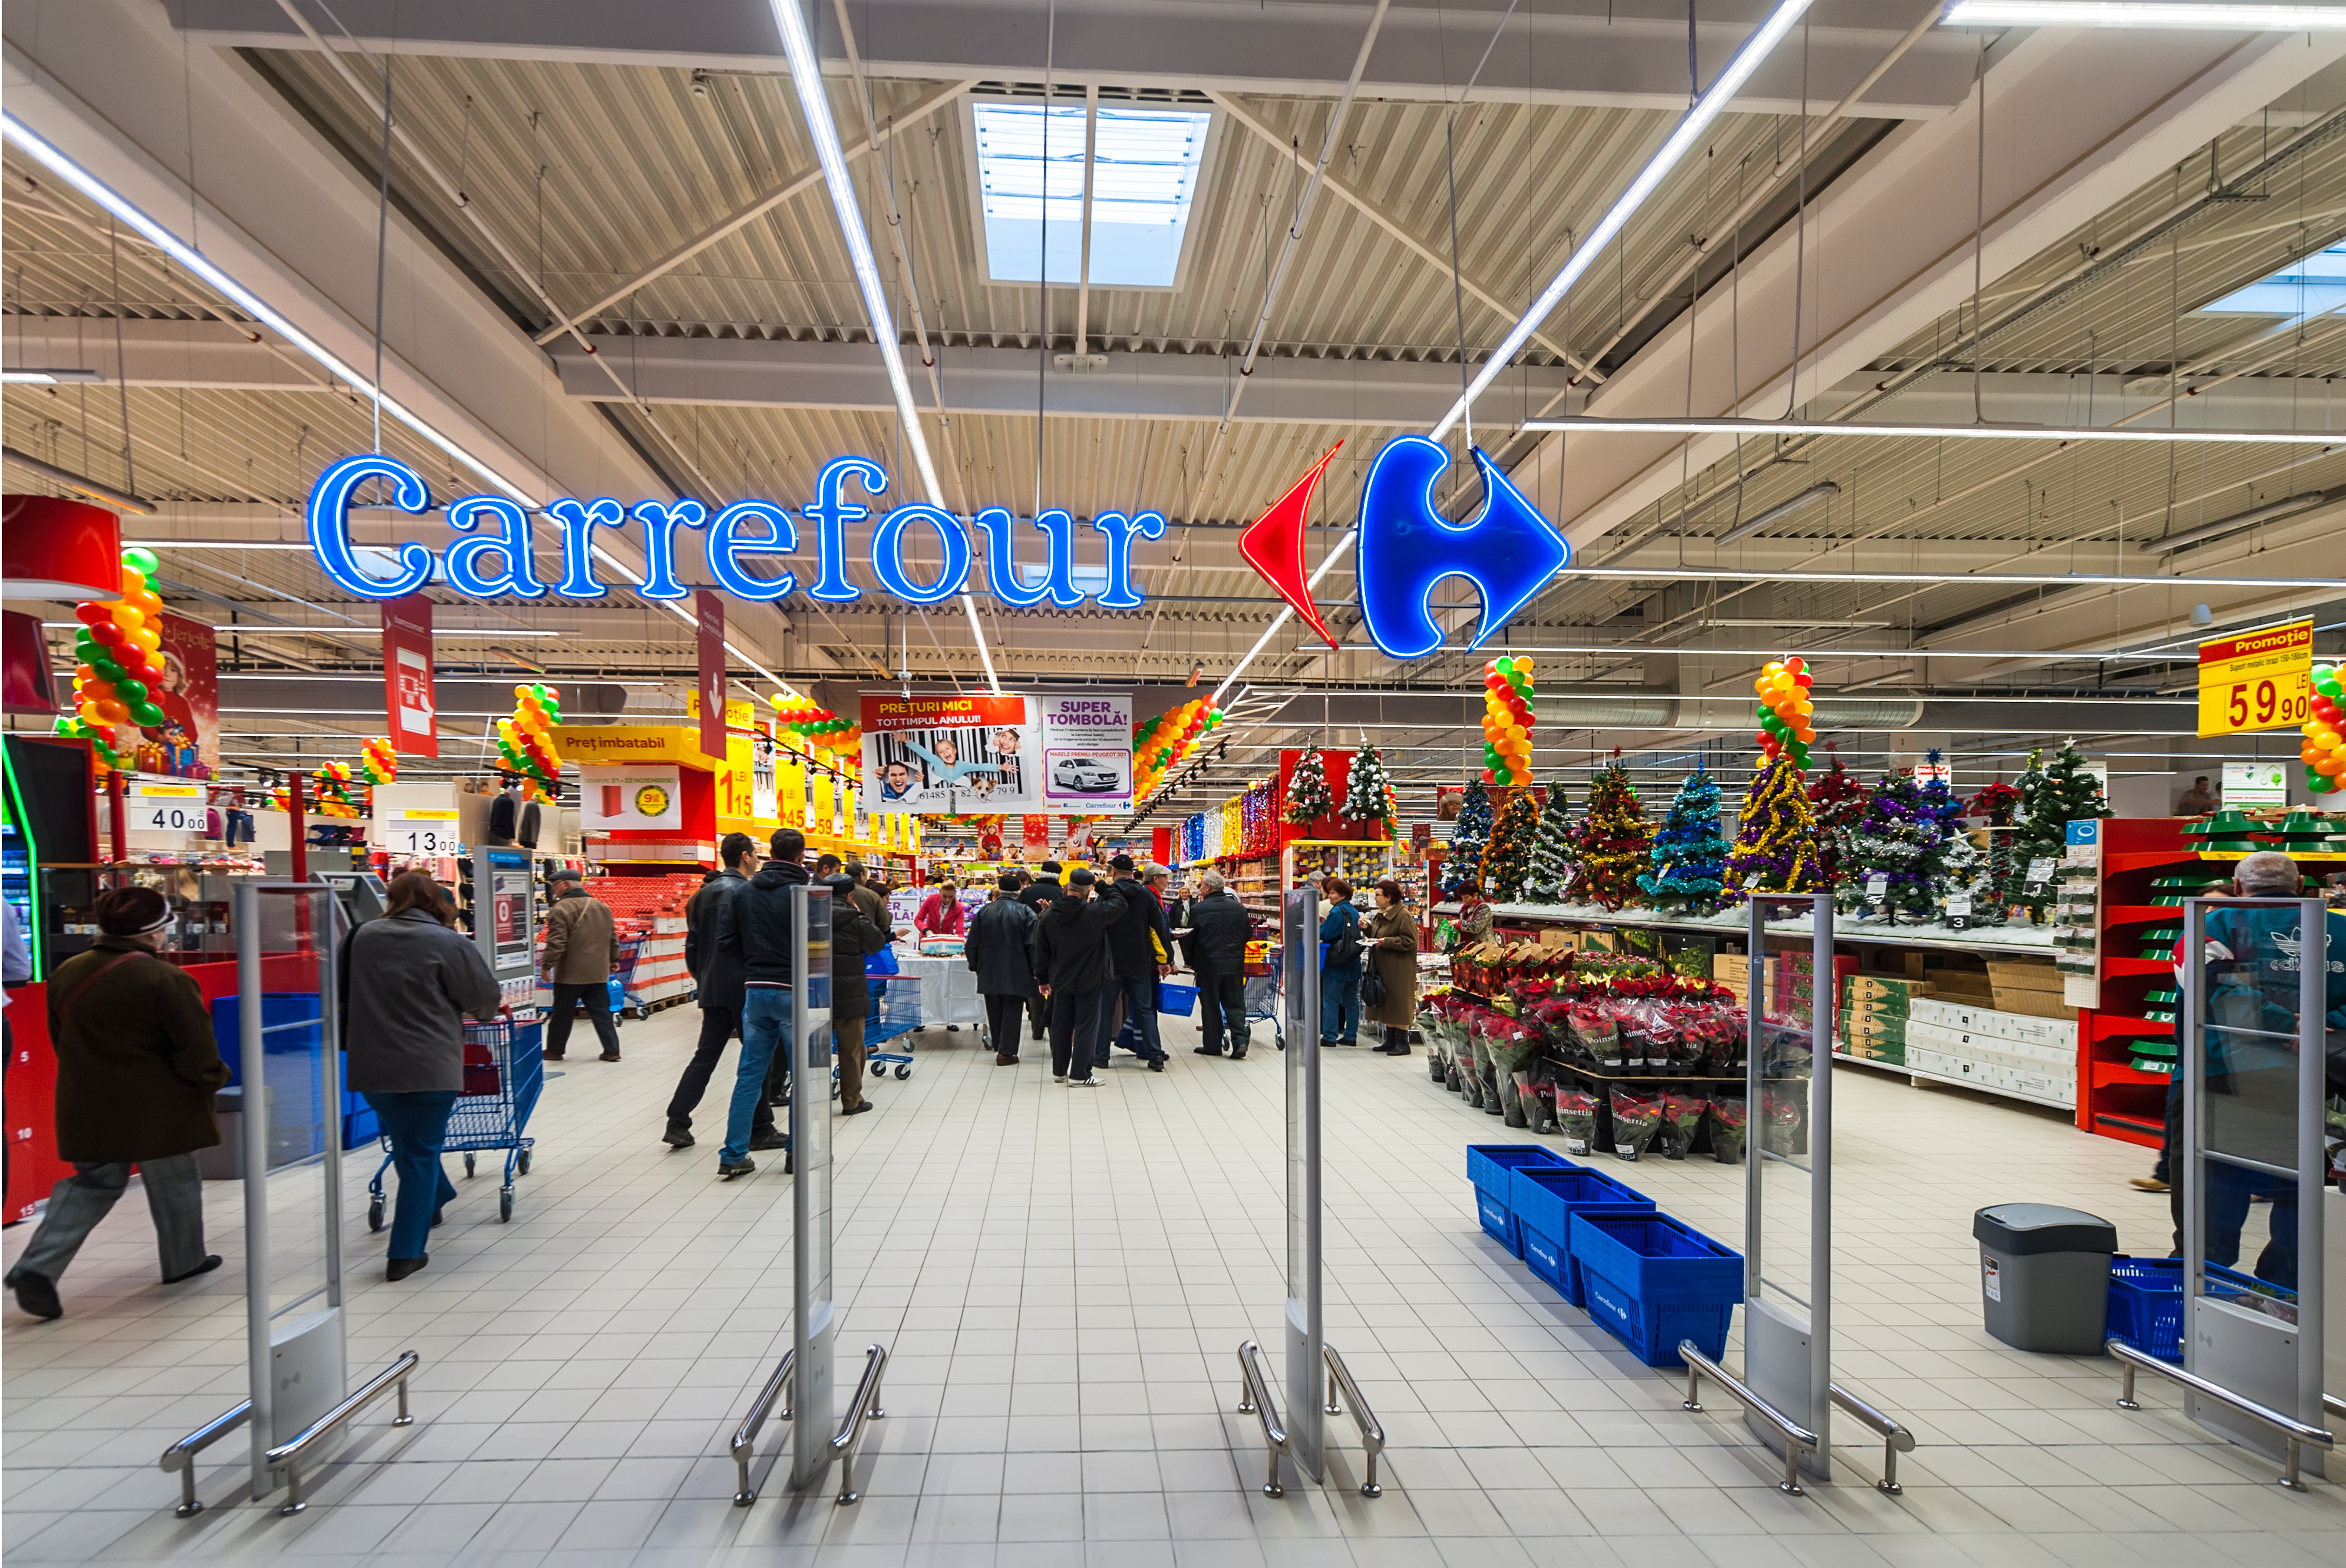 Carrefour también apuesta por al automatización y abre su supermercado sin empleados | Computer Hoy